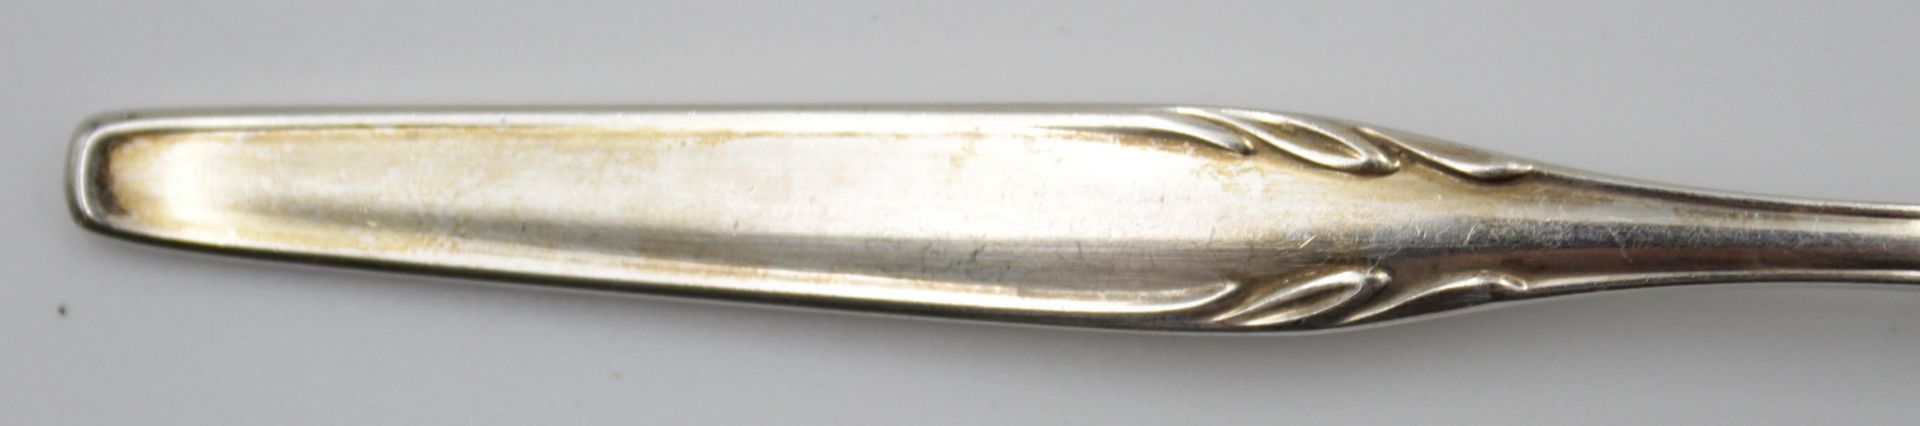 12x Kuchengabeln, WMF, 800er Silber, zus. 400gr. , L-15,8cm. - Image 3 of 4